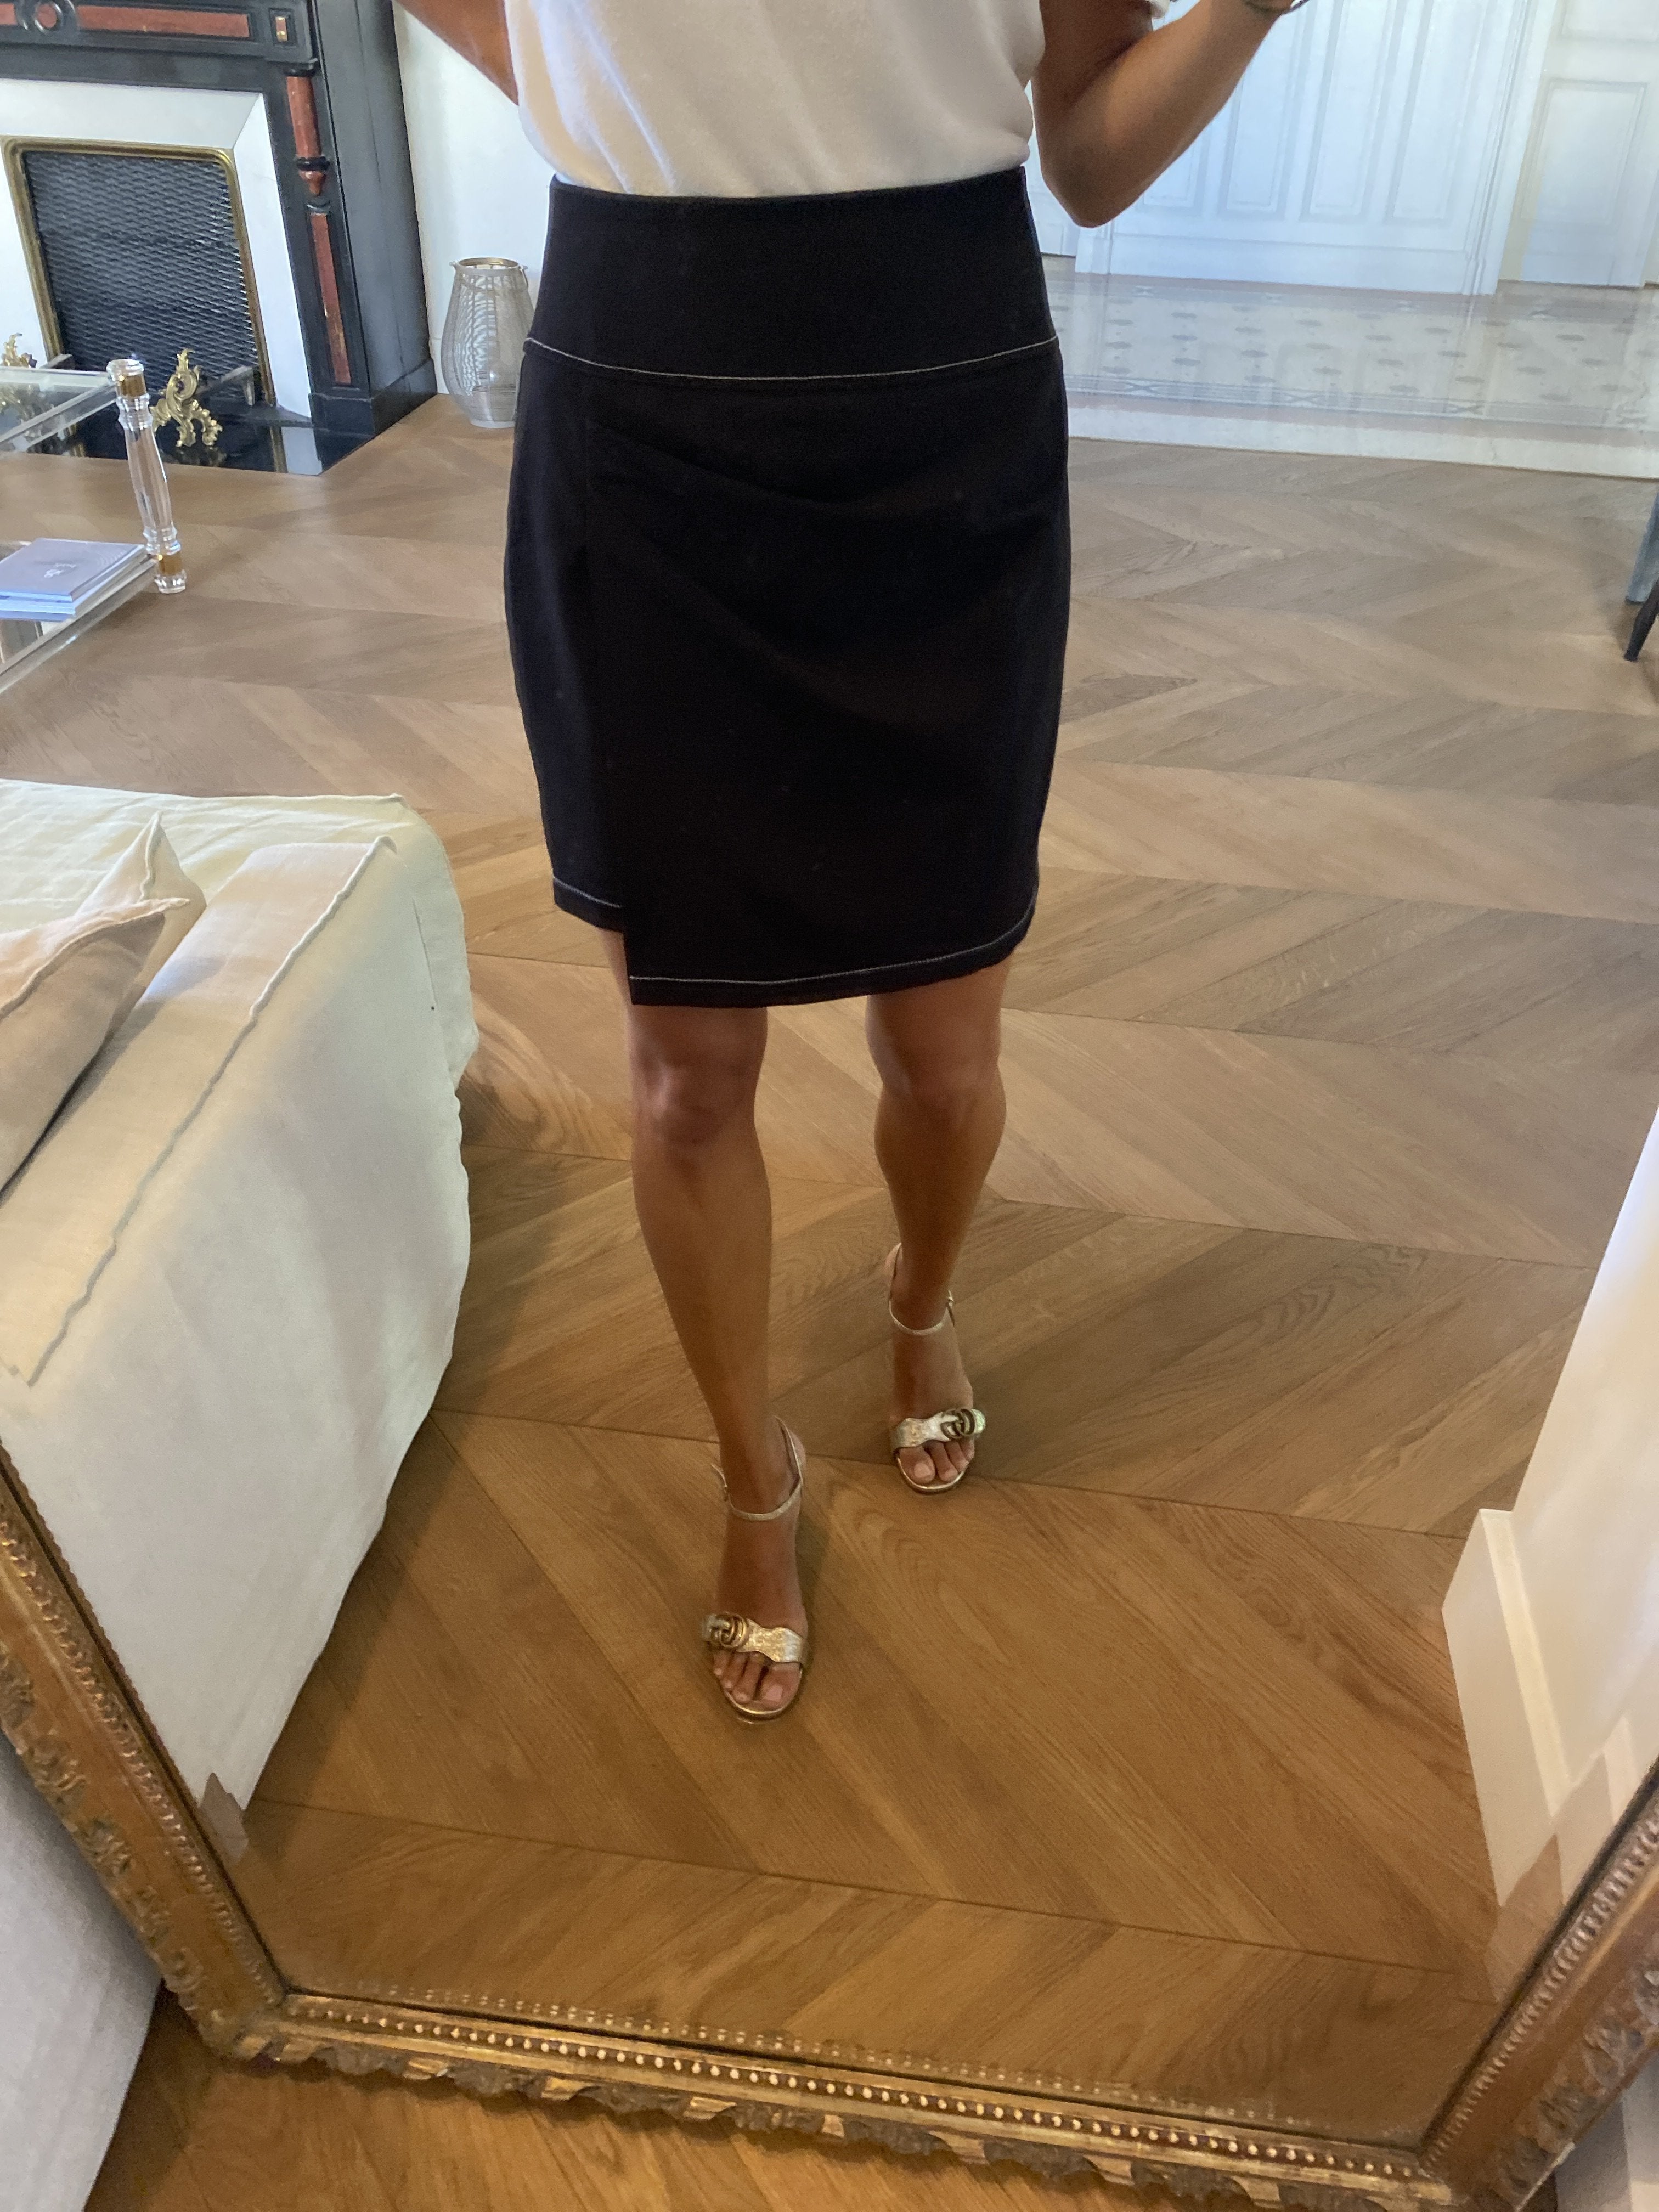 Jupe Zara courte noire couture blanche – La Penderie de Jenna